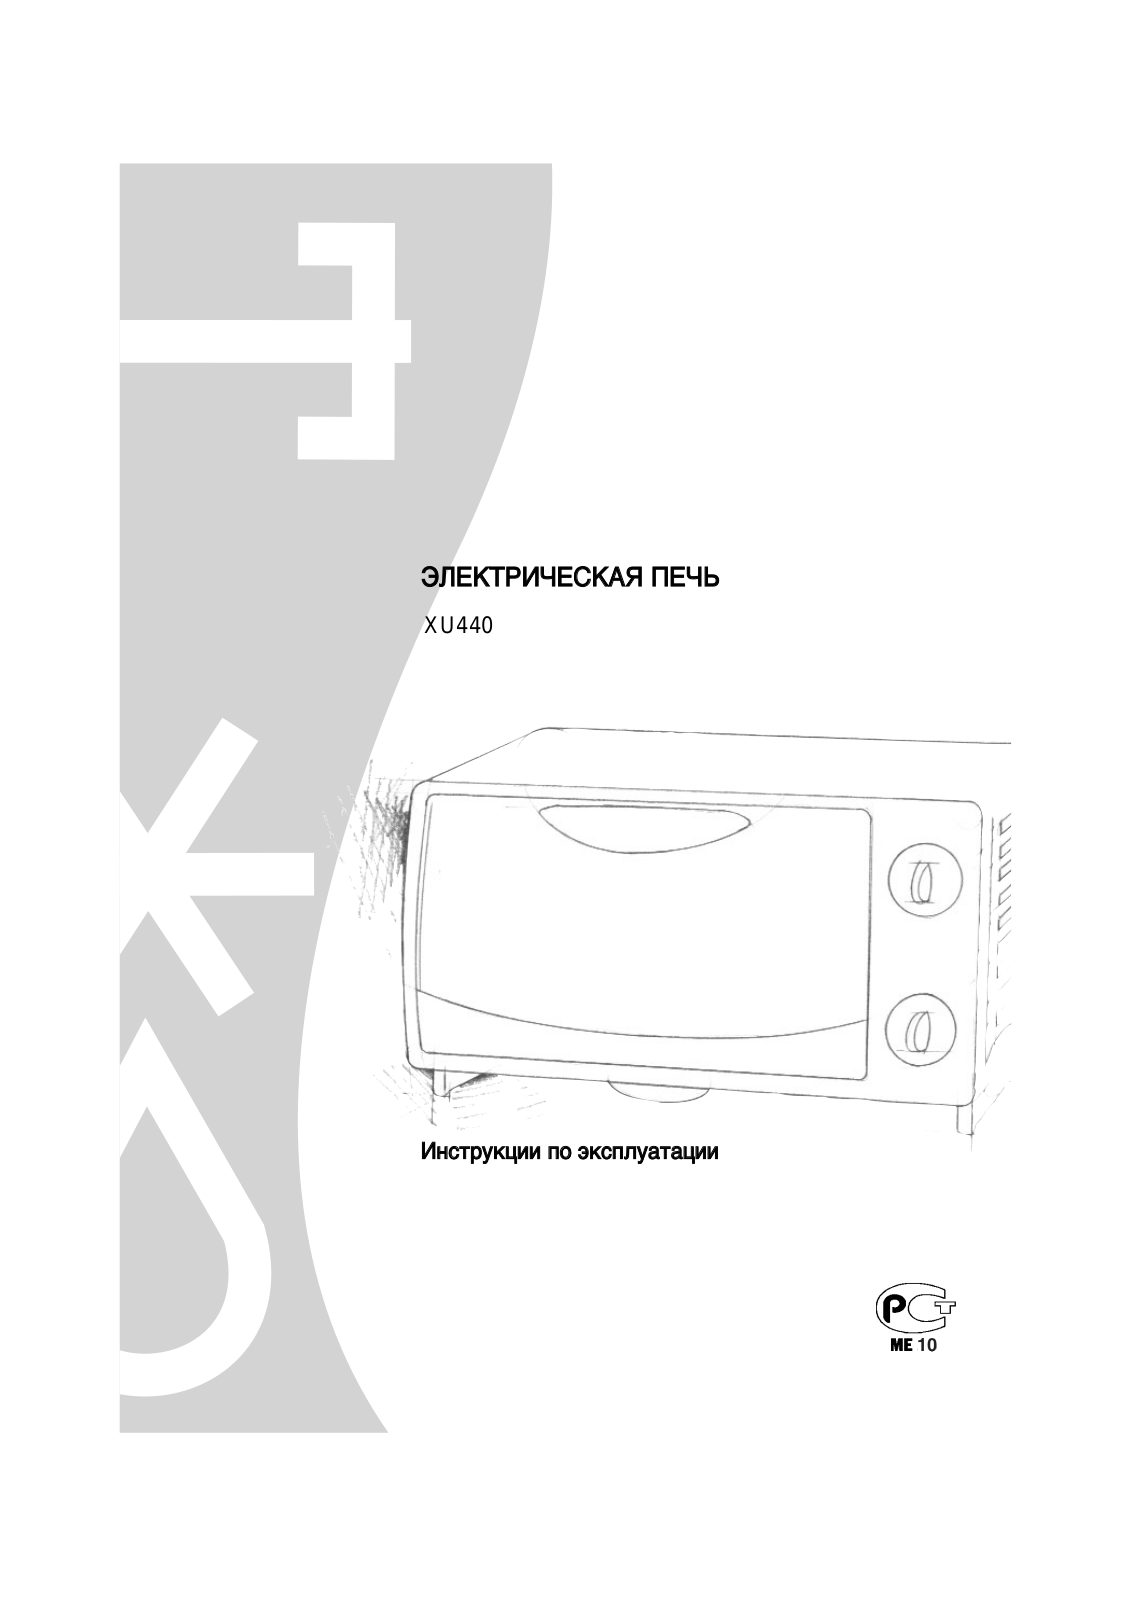 Delonghi XU 440 User Manual